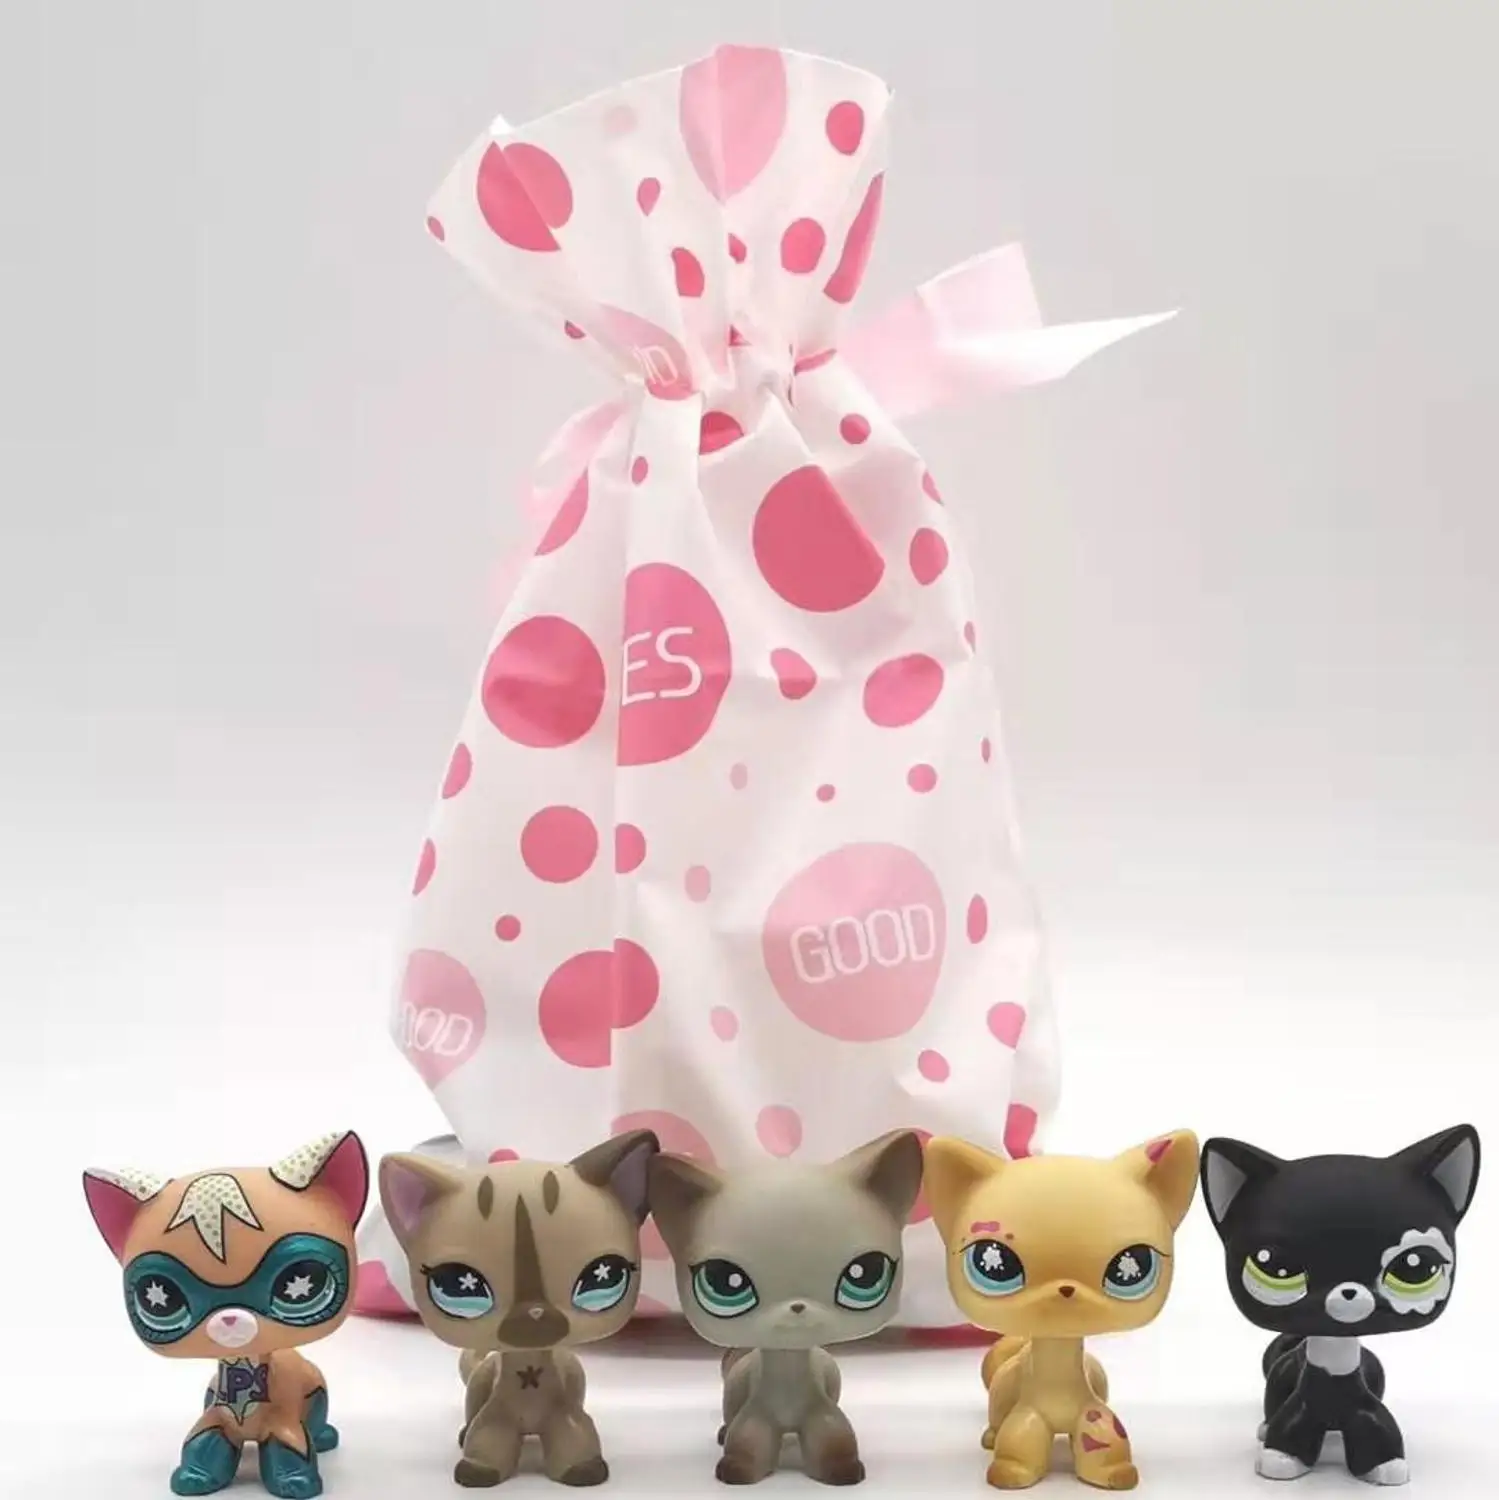 5 шт./пакет случайный с изящным «кукольным» зверушка для домашних животных модель игрушки мини кошка старый Pet shop lps игрушки Коллекция Рисунок для детей Рождественский подарок - Цвет: random 5pcs